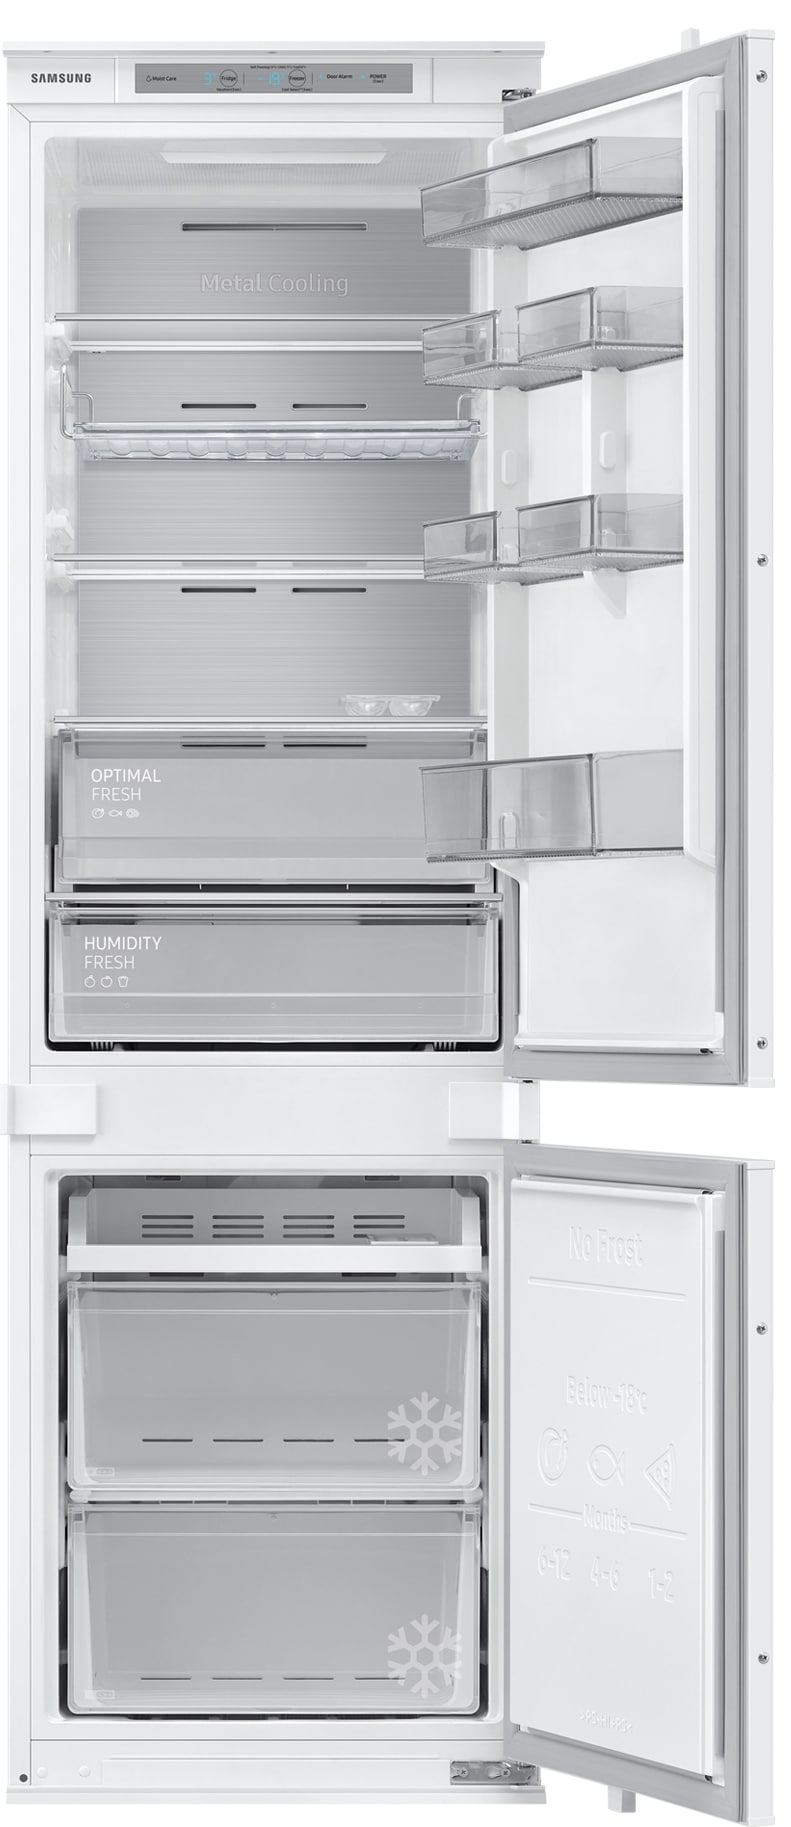 #1 på vores liste over integrerede køleskabe er Integreret køleskab